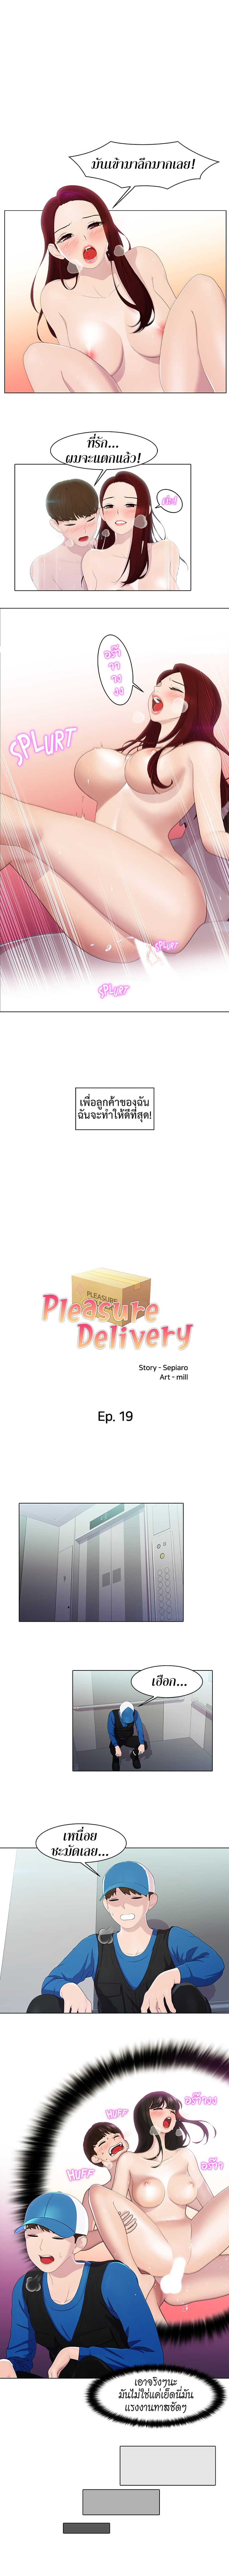 Pleasure Delivery 19 ภาพที่ 2